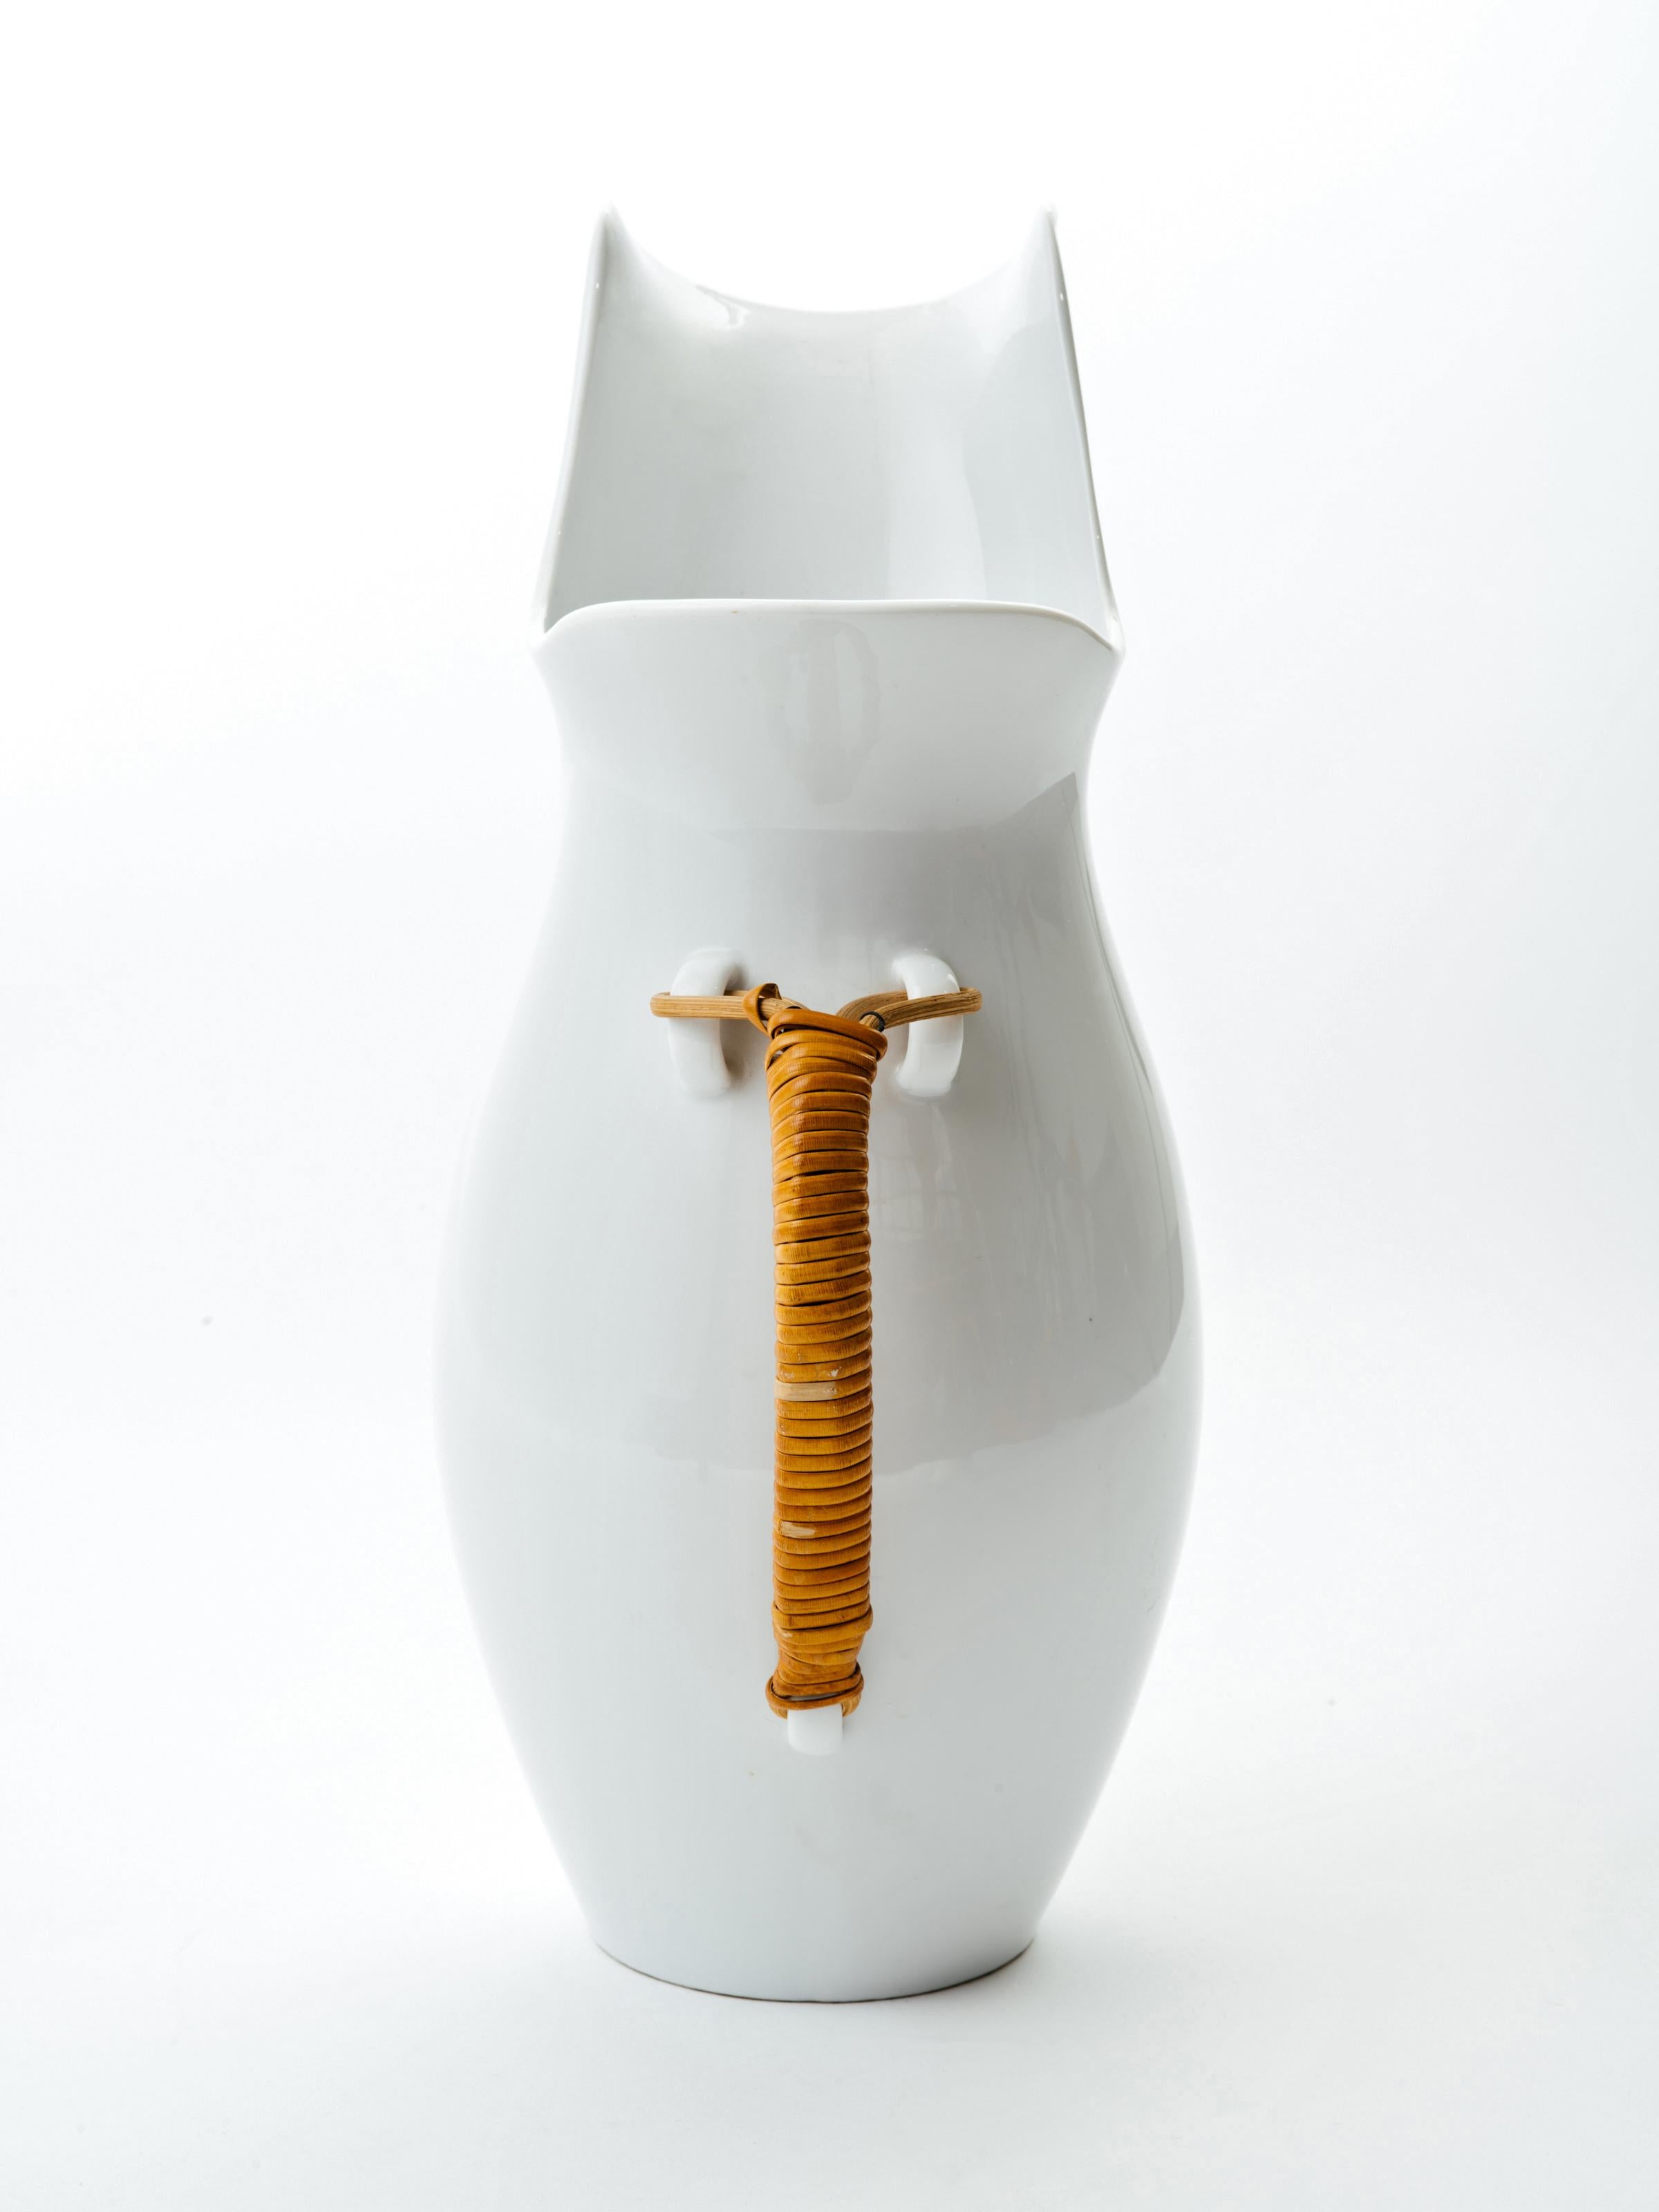 Ungewöhnlich großer Krug aus glasierter Keramik von Kenji Fujita für Freeman Lederman. Sinnliches:: minimalistisches Design:: signiert auf der Unterseite.